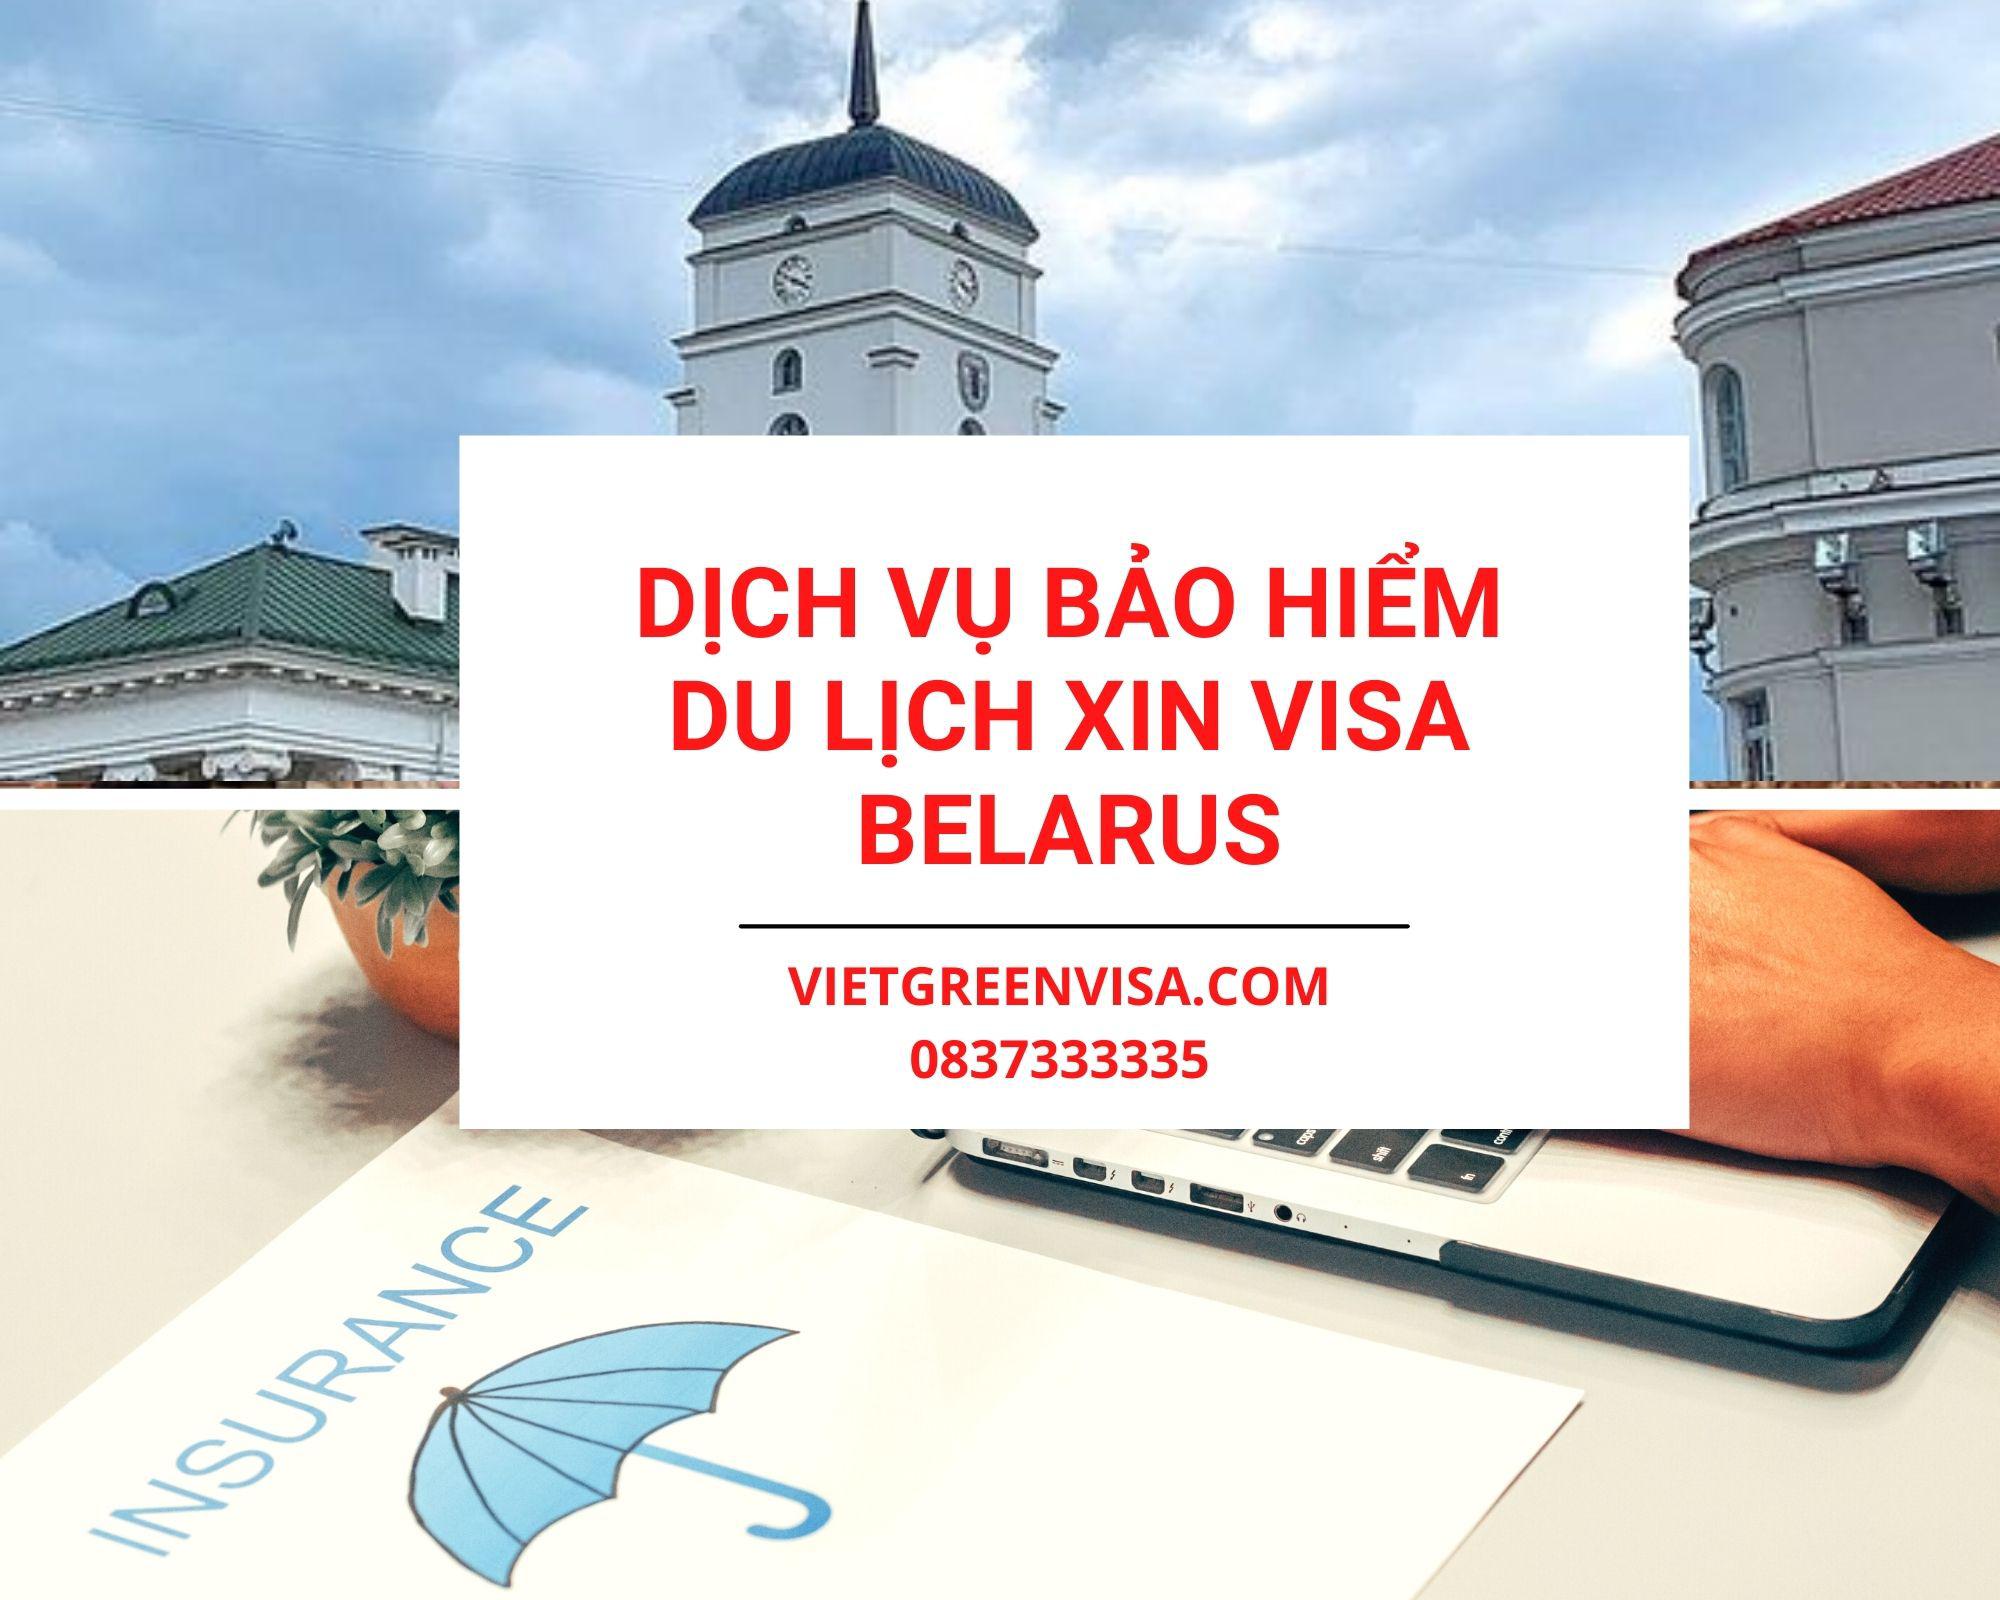 Dịch vụ bảo hiểm du lịch xin visa Belarus giá tốt nhất